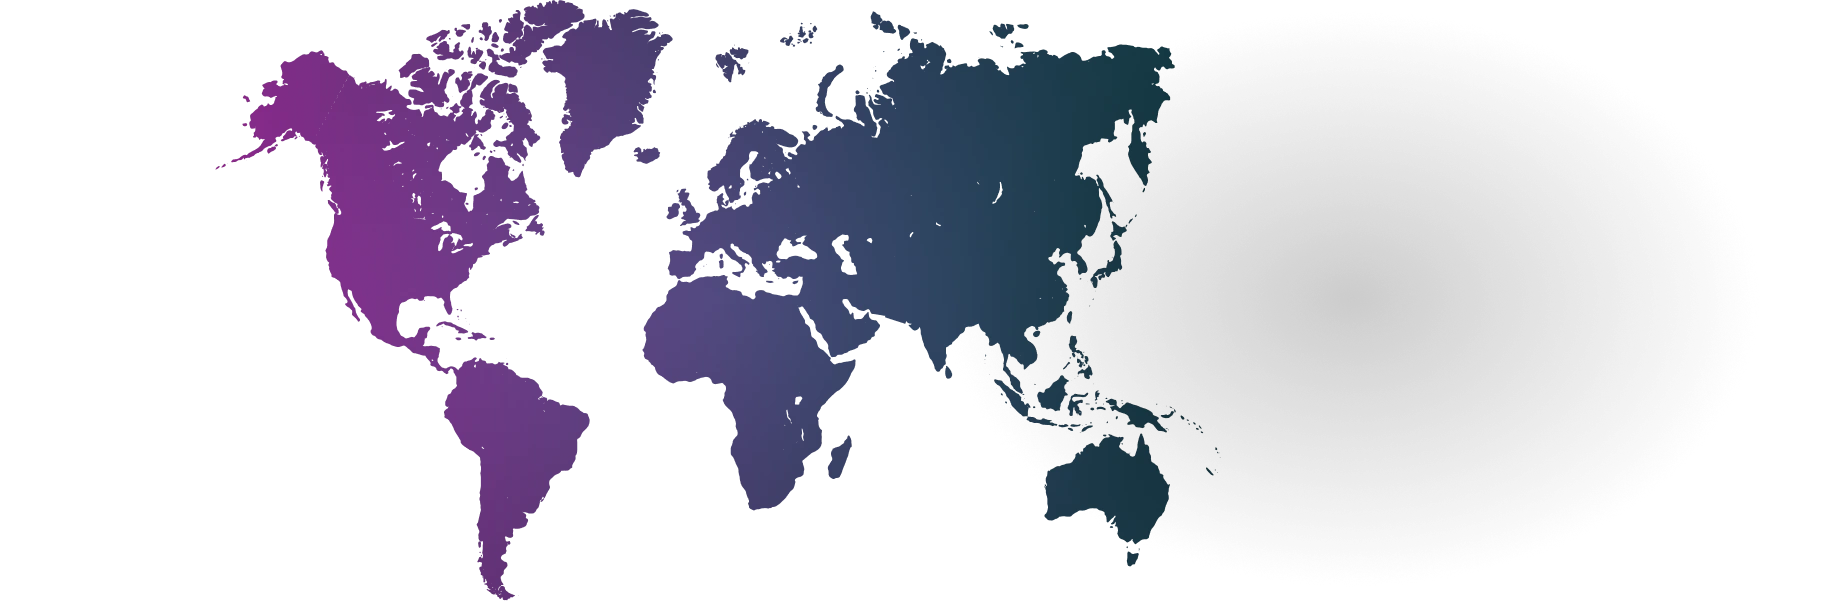 Global Background